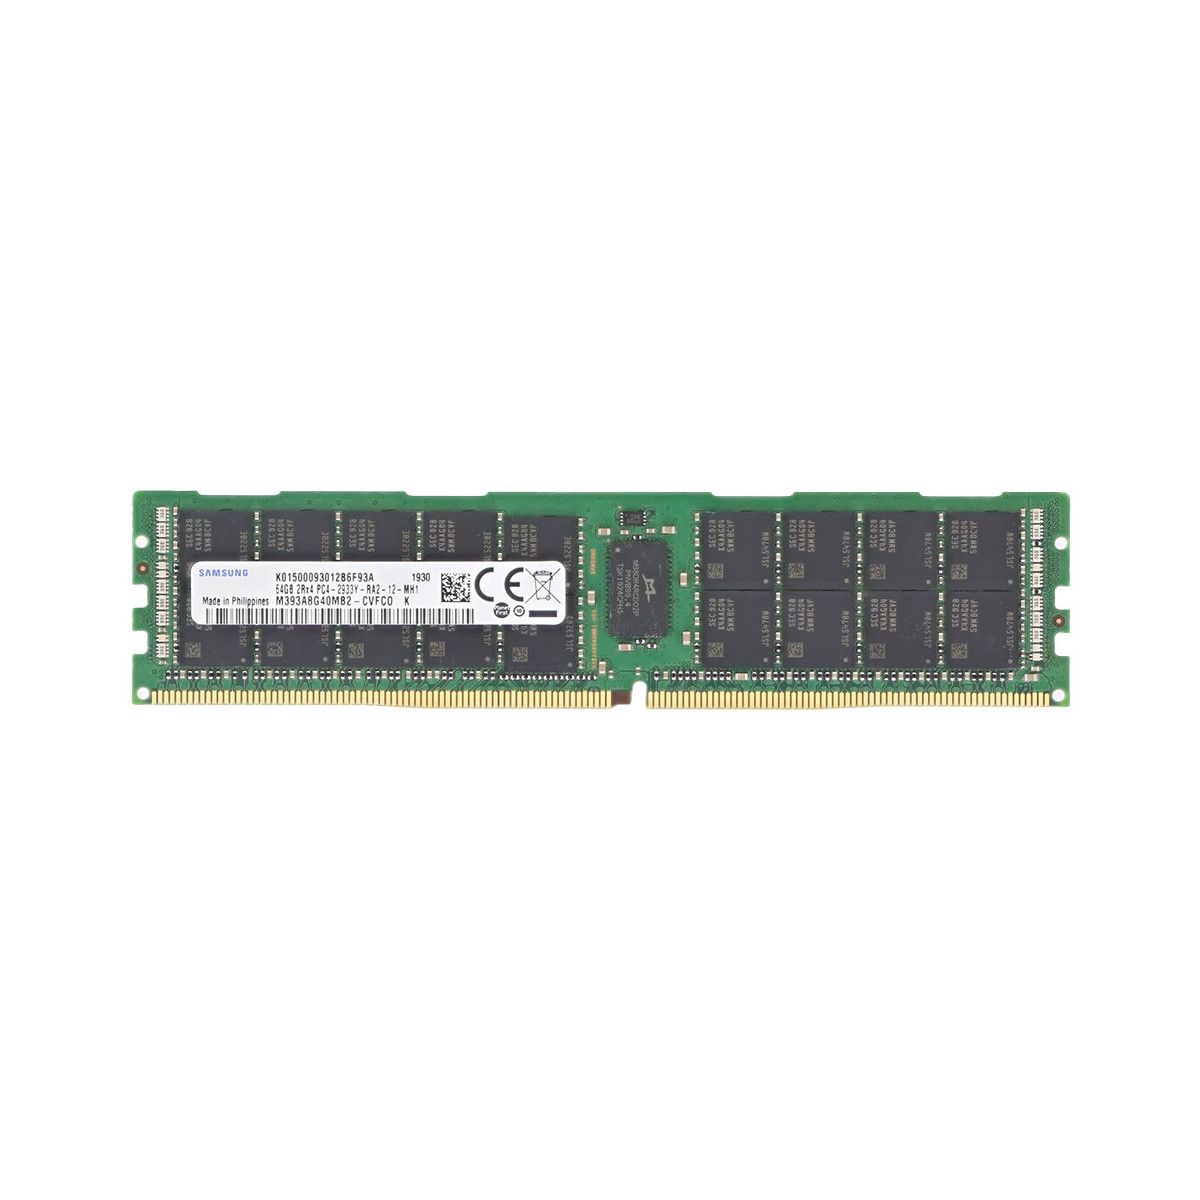 AA601615-MS - Memstar 1x 64GB DDR4-2933 RDIMM PC4-23466U-R - Mem-Star Kompatybilna pamięć OEM 1 - Memstar 